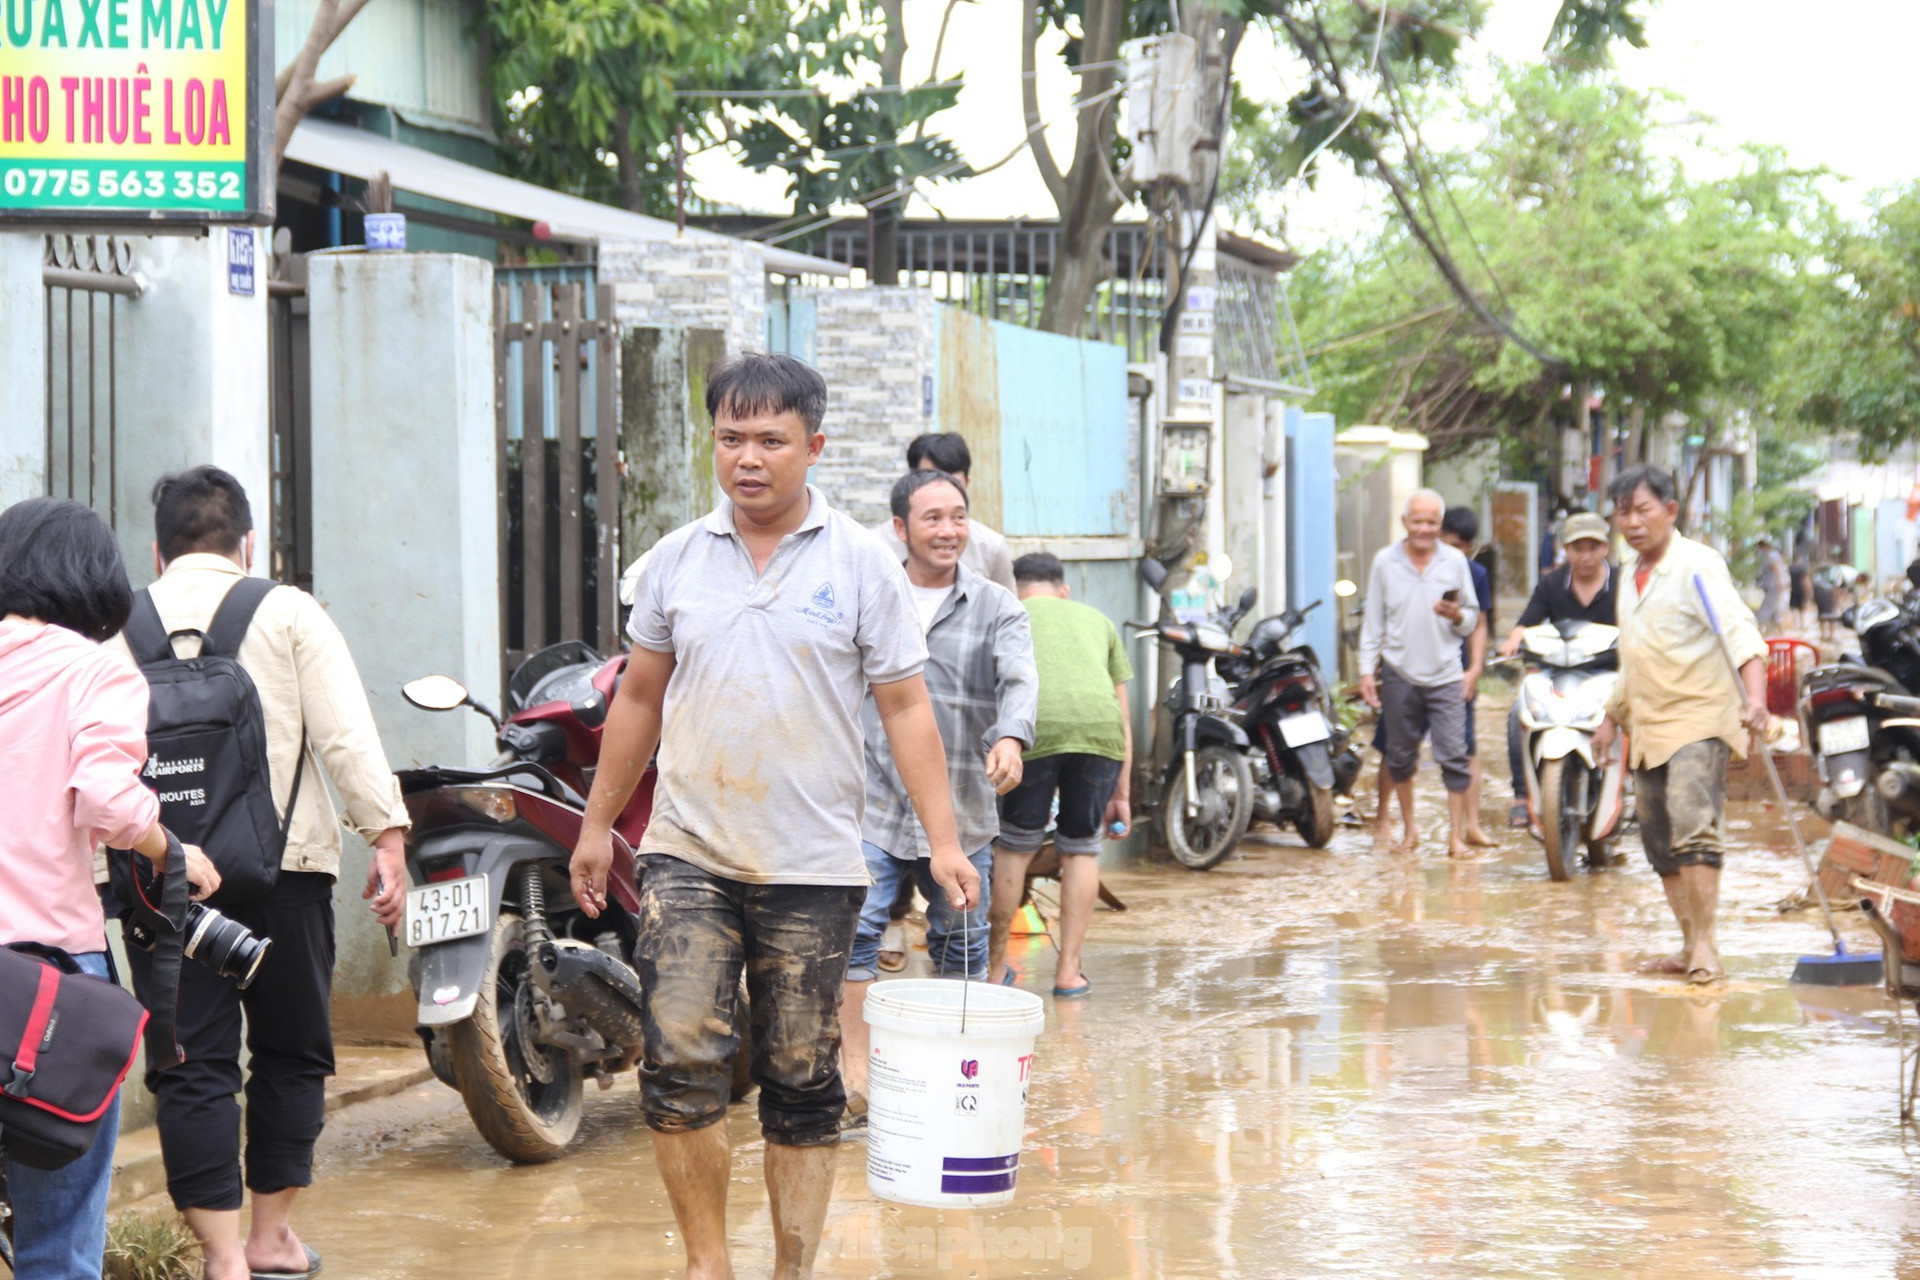 Thức xuyên đêm lo lắng, người dân Đà Nẵng lại tất bật dọn dẹp nhà cửa sau mưa ngập lịch sử ảnh 1